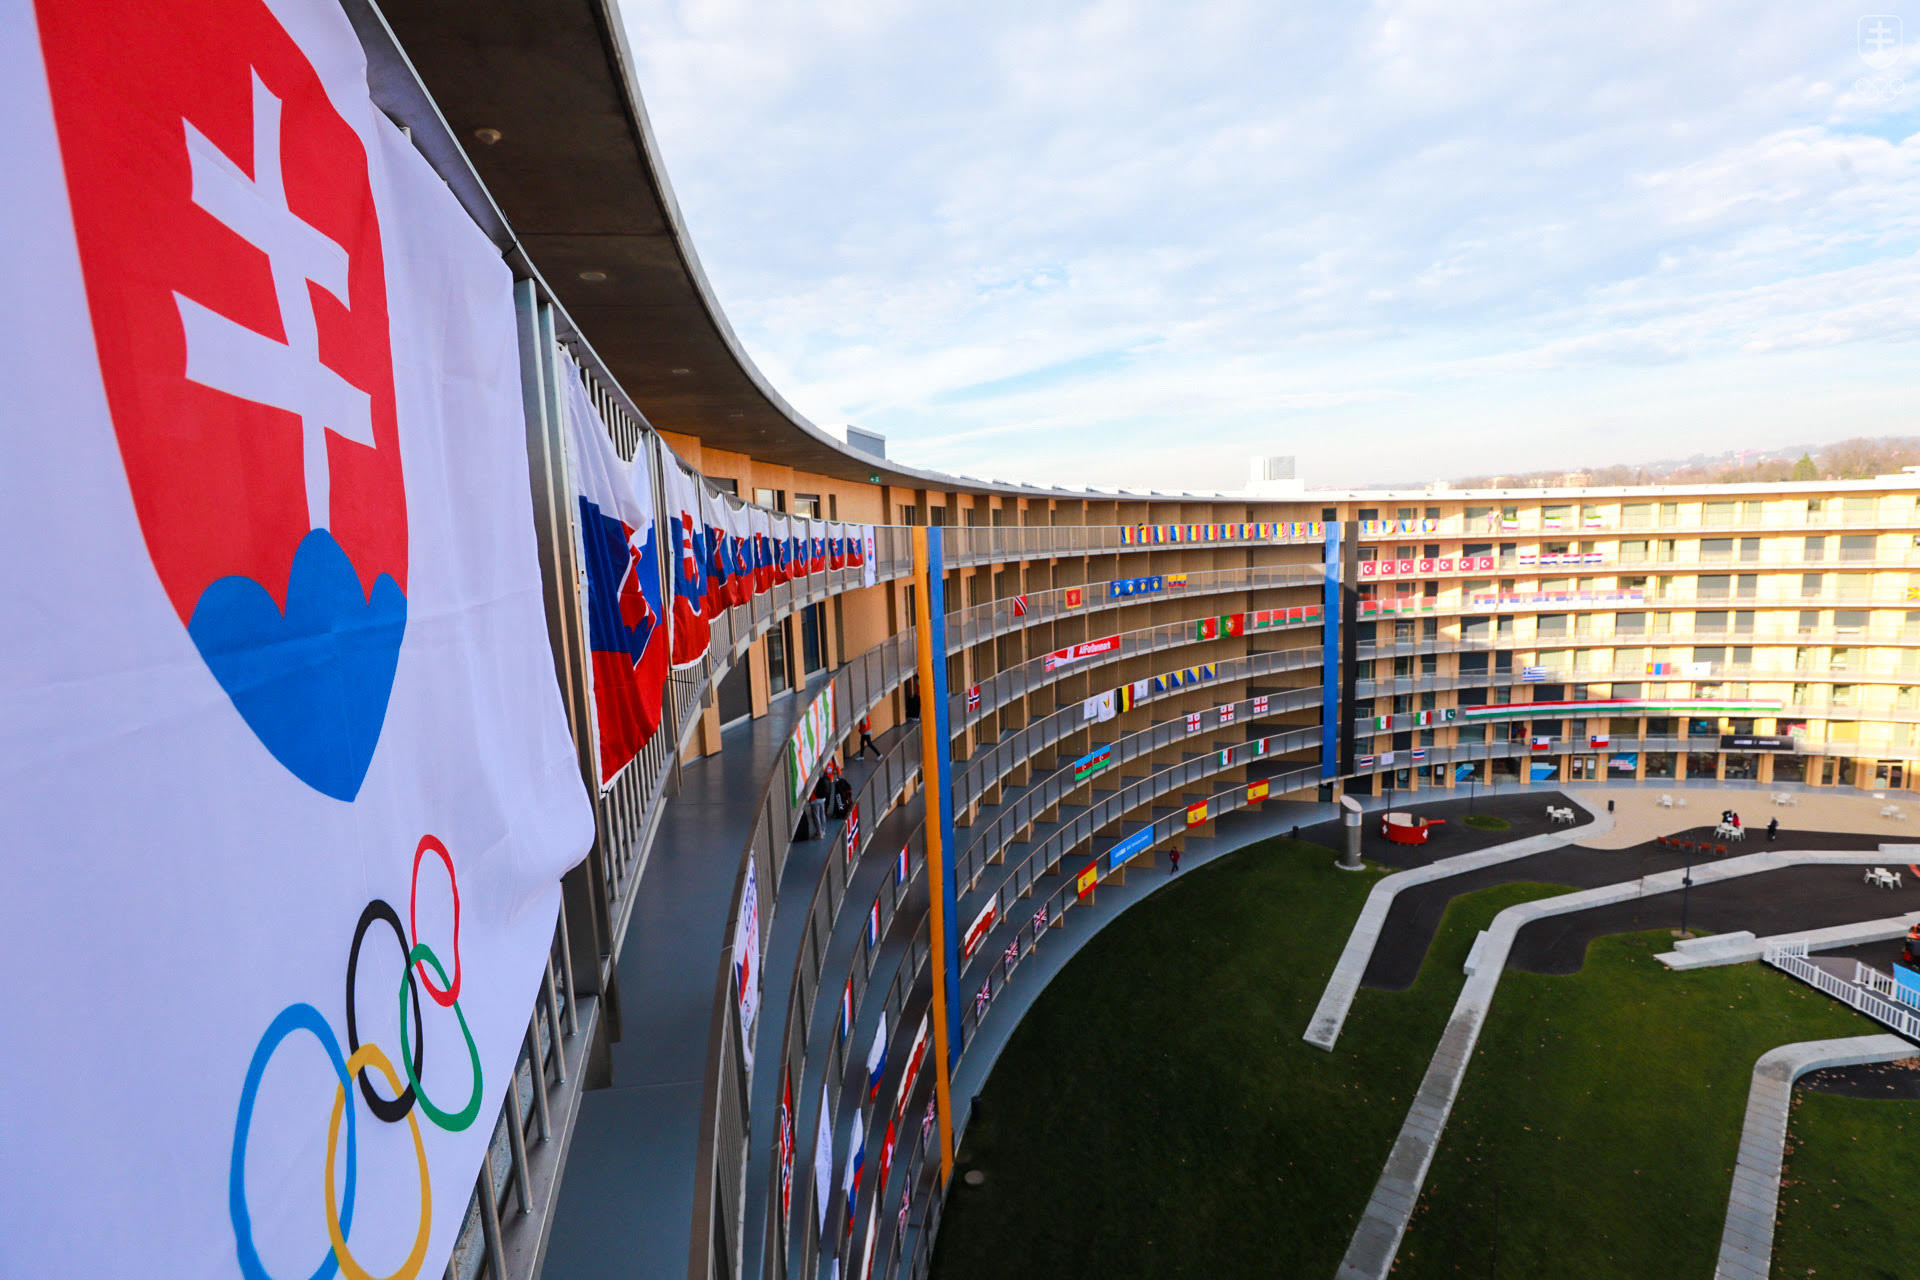 Olympijská dedina športovcov je situovaná v novovybudovanom komplexe Vortex. Po prvý raz v histórii olympijských hier mládeže bývajú všetci športovci pod jednou strechou. 